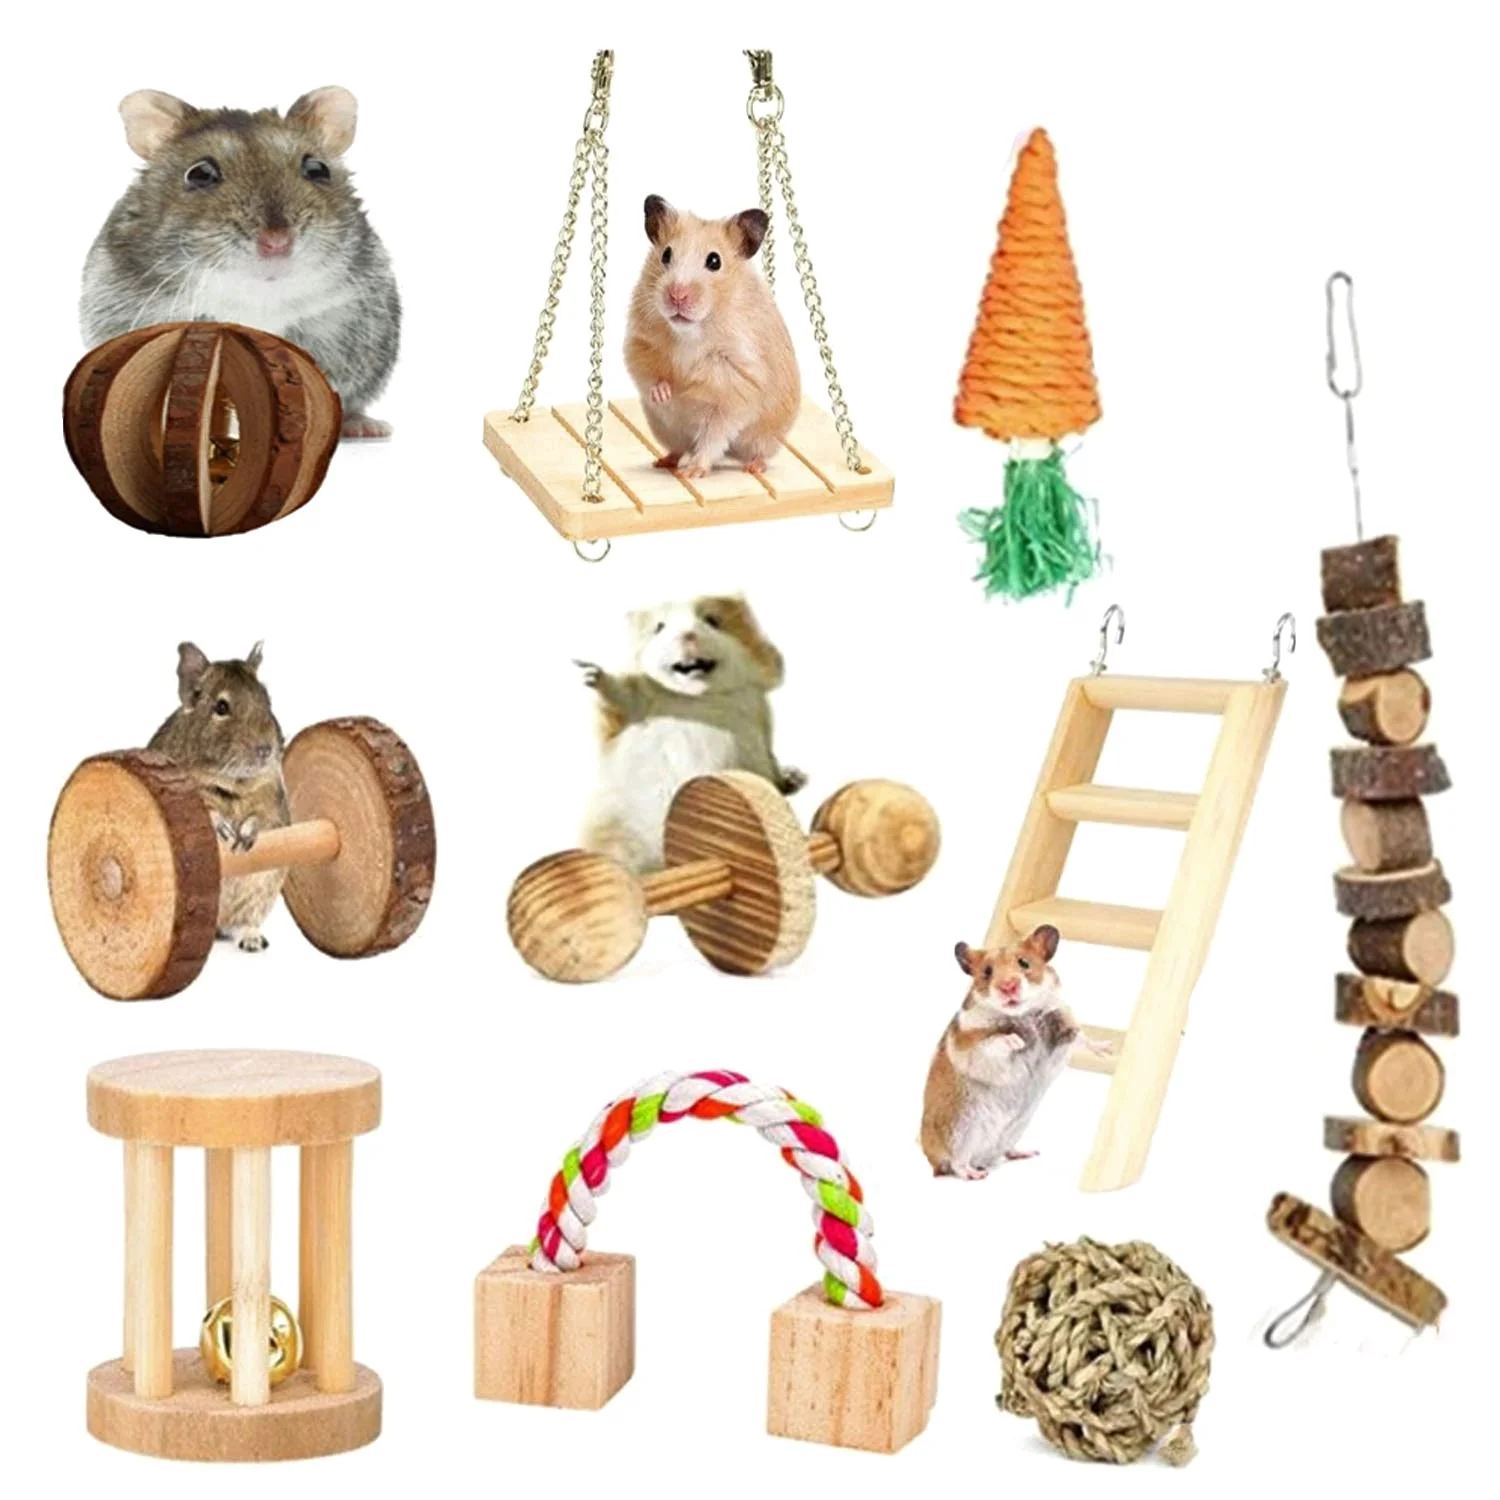 

Игрушки для жевания в виде кролика, деревянные палочки в виде яблока для кролика, аксессуары для маленьких домашних животных, морские свинки, китайские шиллы, хомстры